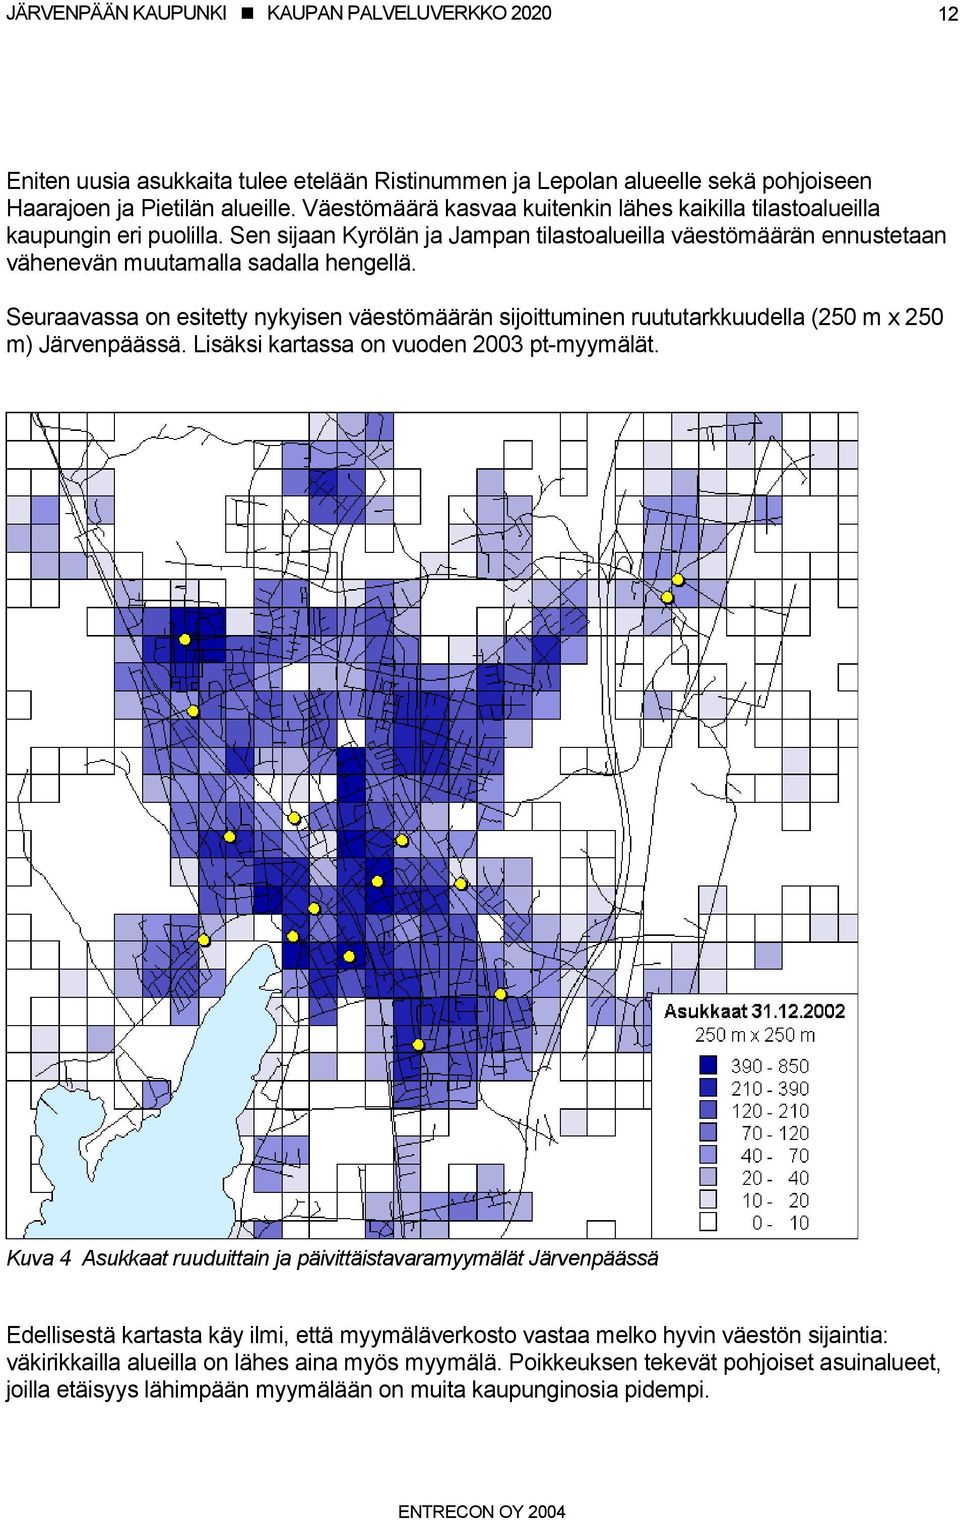 Seuraavassa on esitetty nykyisen väestömäärän sijoittuminen ruututarkkuudella (250 m x 250 m) Järvenpäässä. Lisäksi kartassa on vuoden 2003 pt-myymälät.